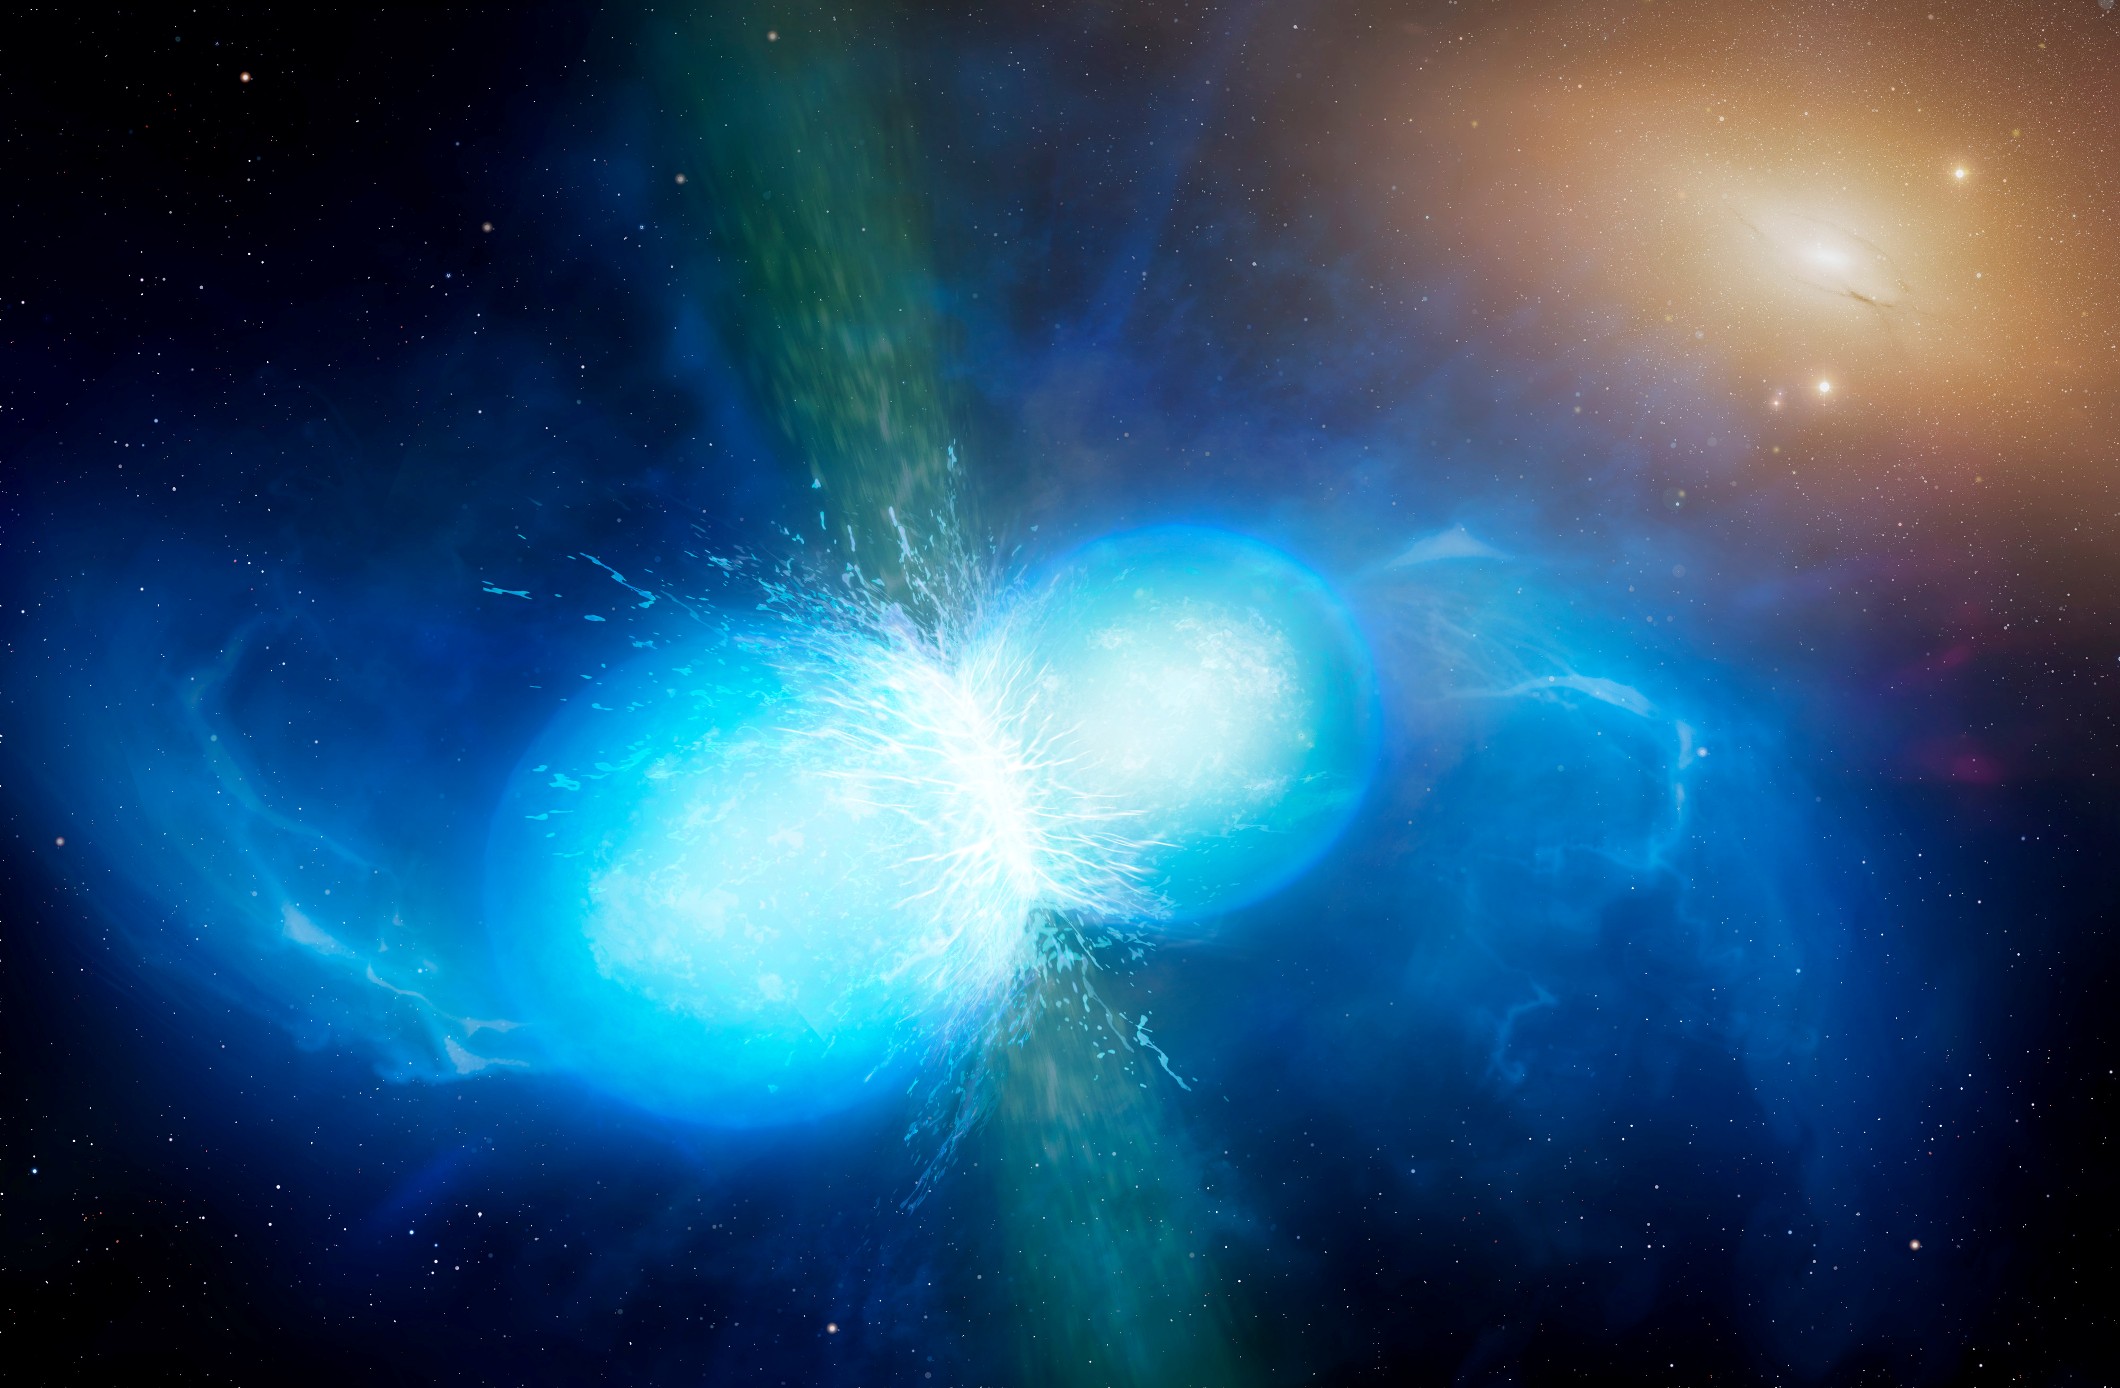 Sur cette vue d’artiste figurent deux étoiles à neutrons de faible dimension mais de densité très élevée sur le point de fusionner et d’exploser en kilonova. Cet événement particulièrement rare devrait se traduire par l’émission d’ondes gravitationnelles et de sursauts gamma courts. L’une et l’autre émissions ont été effectivement observées le 17 août 2017 par Ligo-Virgo et Fermi-Integral respectivement. Diverses observations détaillées menées au moyen des télescopes de l’ESO ont confirmé la nature de cet objet – une kilonova – situé au sein de la galaxie NGC 4993 à quelque 130 millions d’années-lumière de la Terre. Ce type d’objet constitue la principale source d’éléments chimiques lourds, tels l’or et le platine, dans l’Univers. © University of Warwick/Mark Garlick